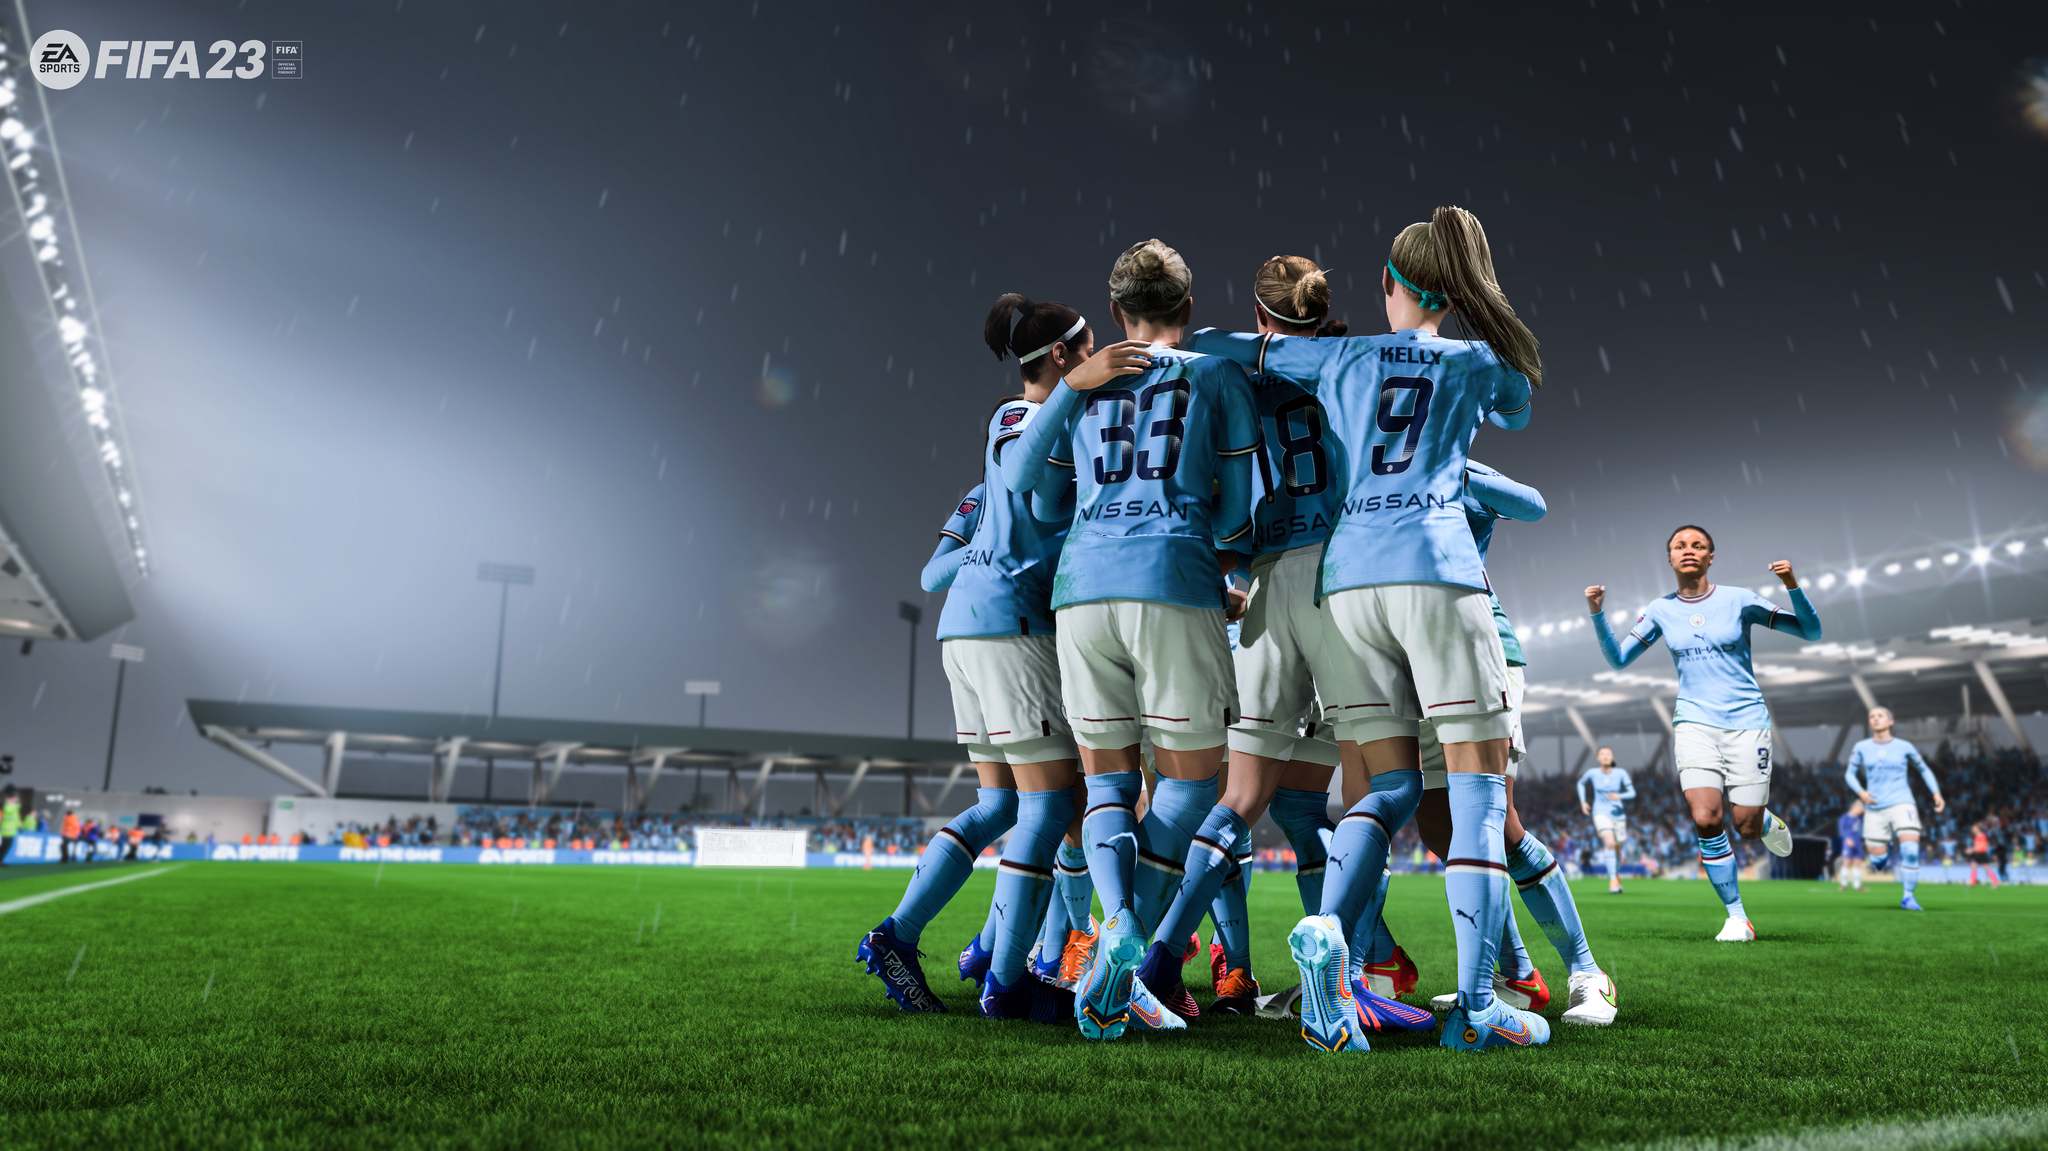 El Manchester City Womens celebra un gol en FIFA 23